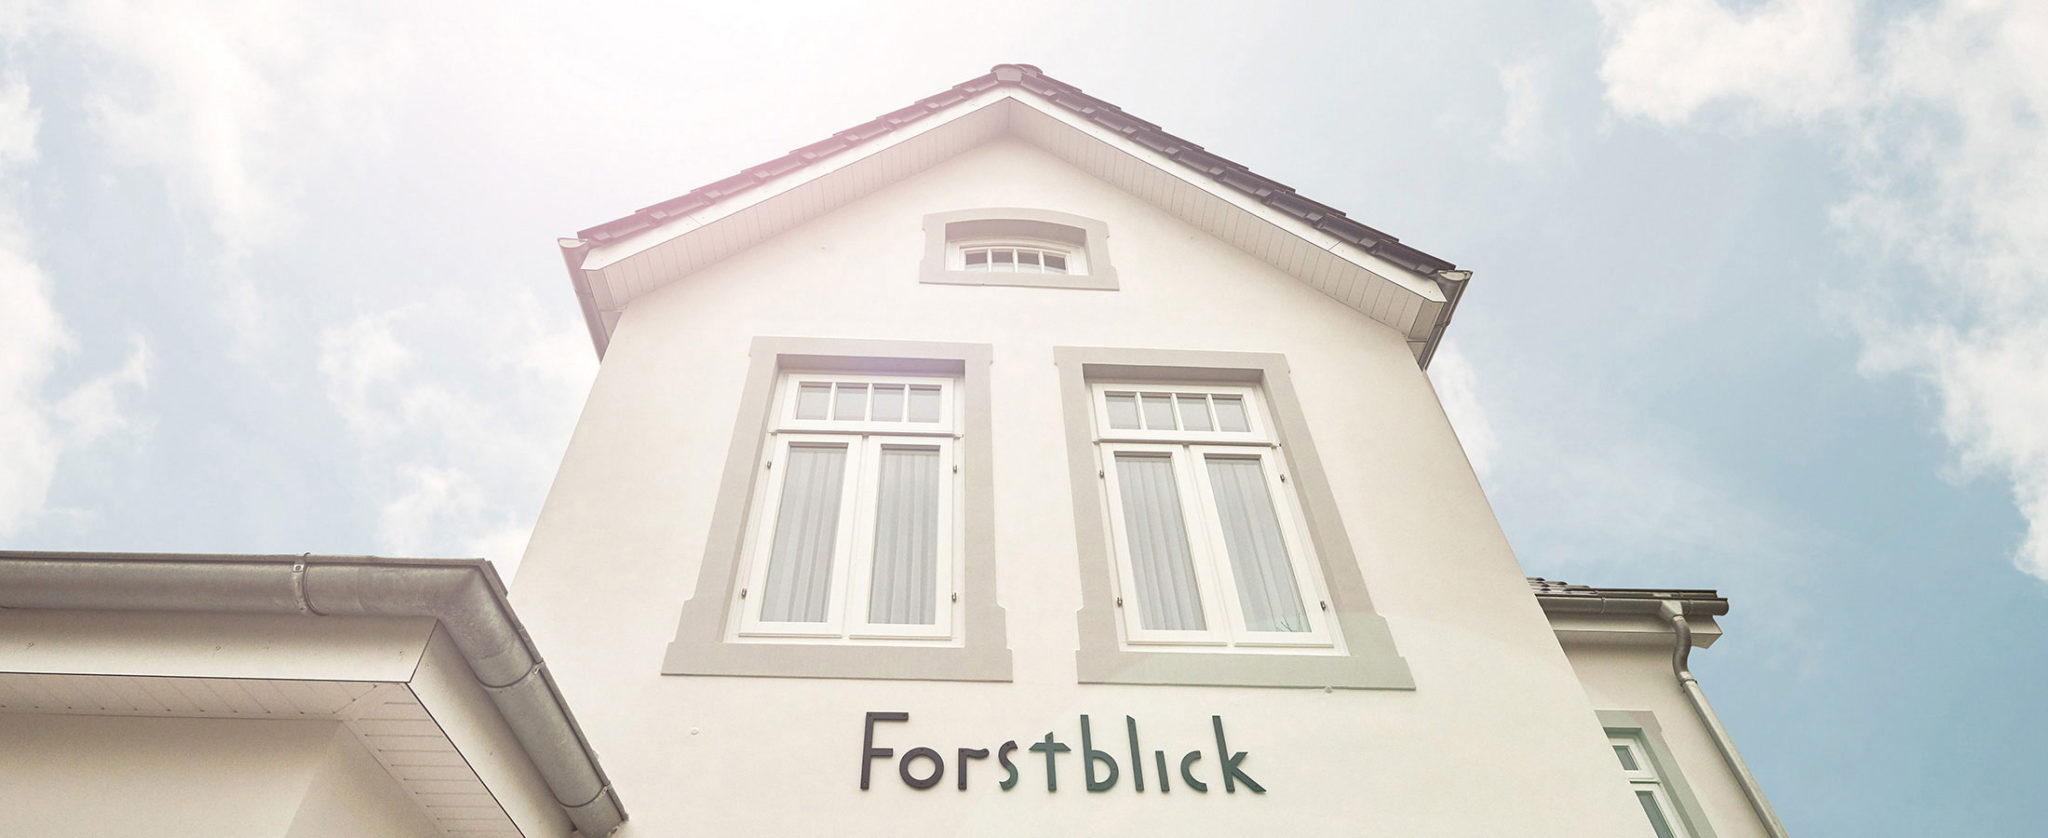 Villa Forstblick | Fassade